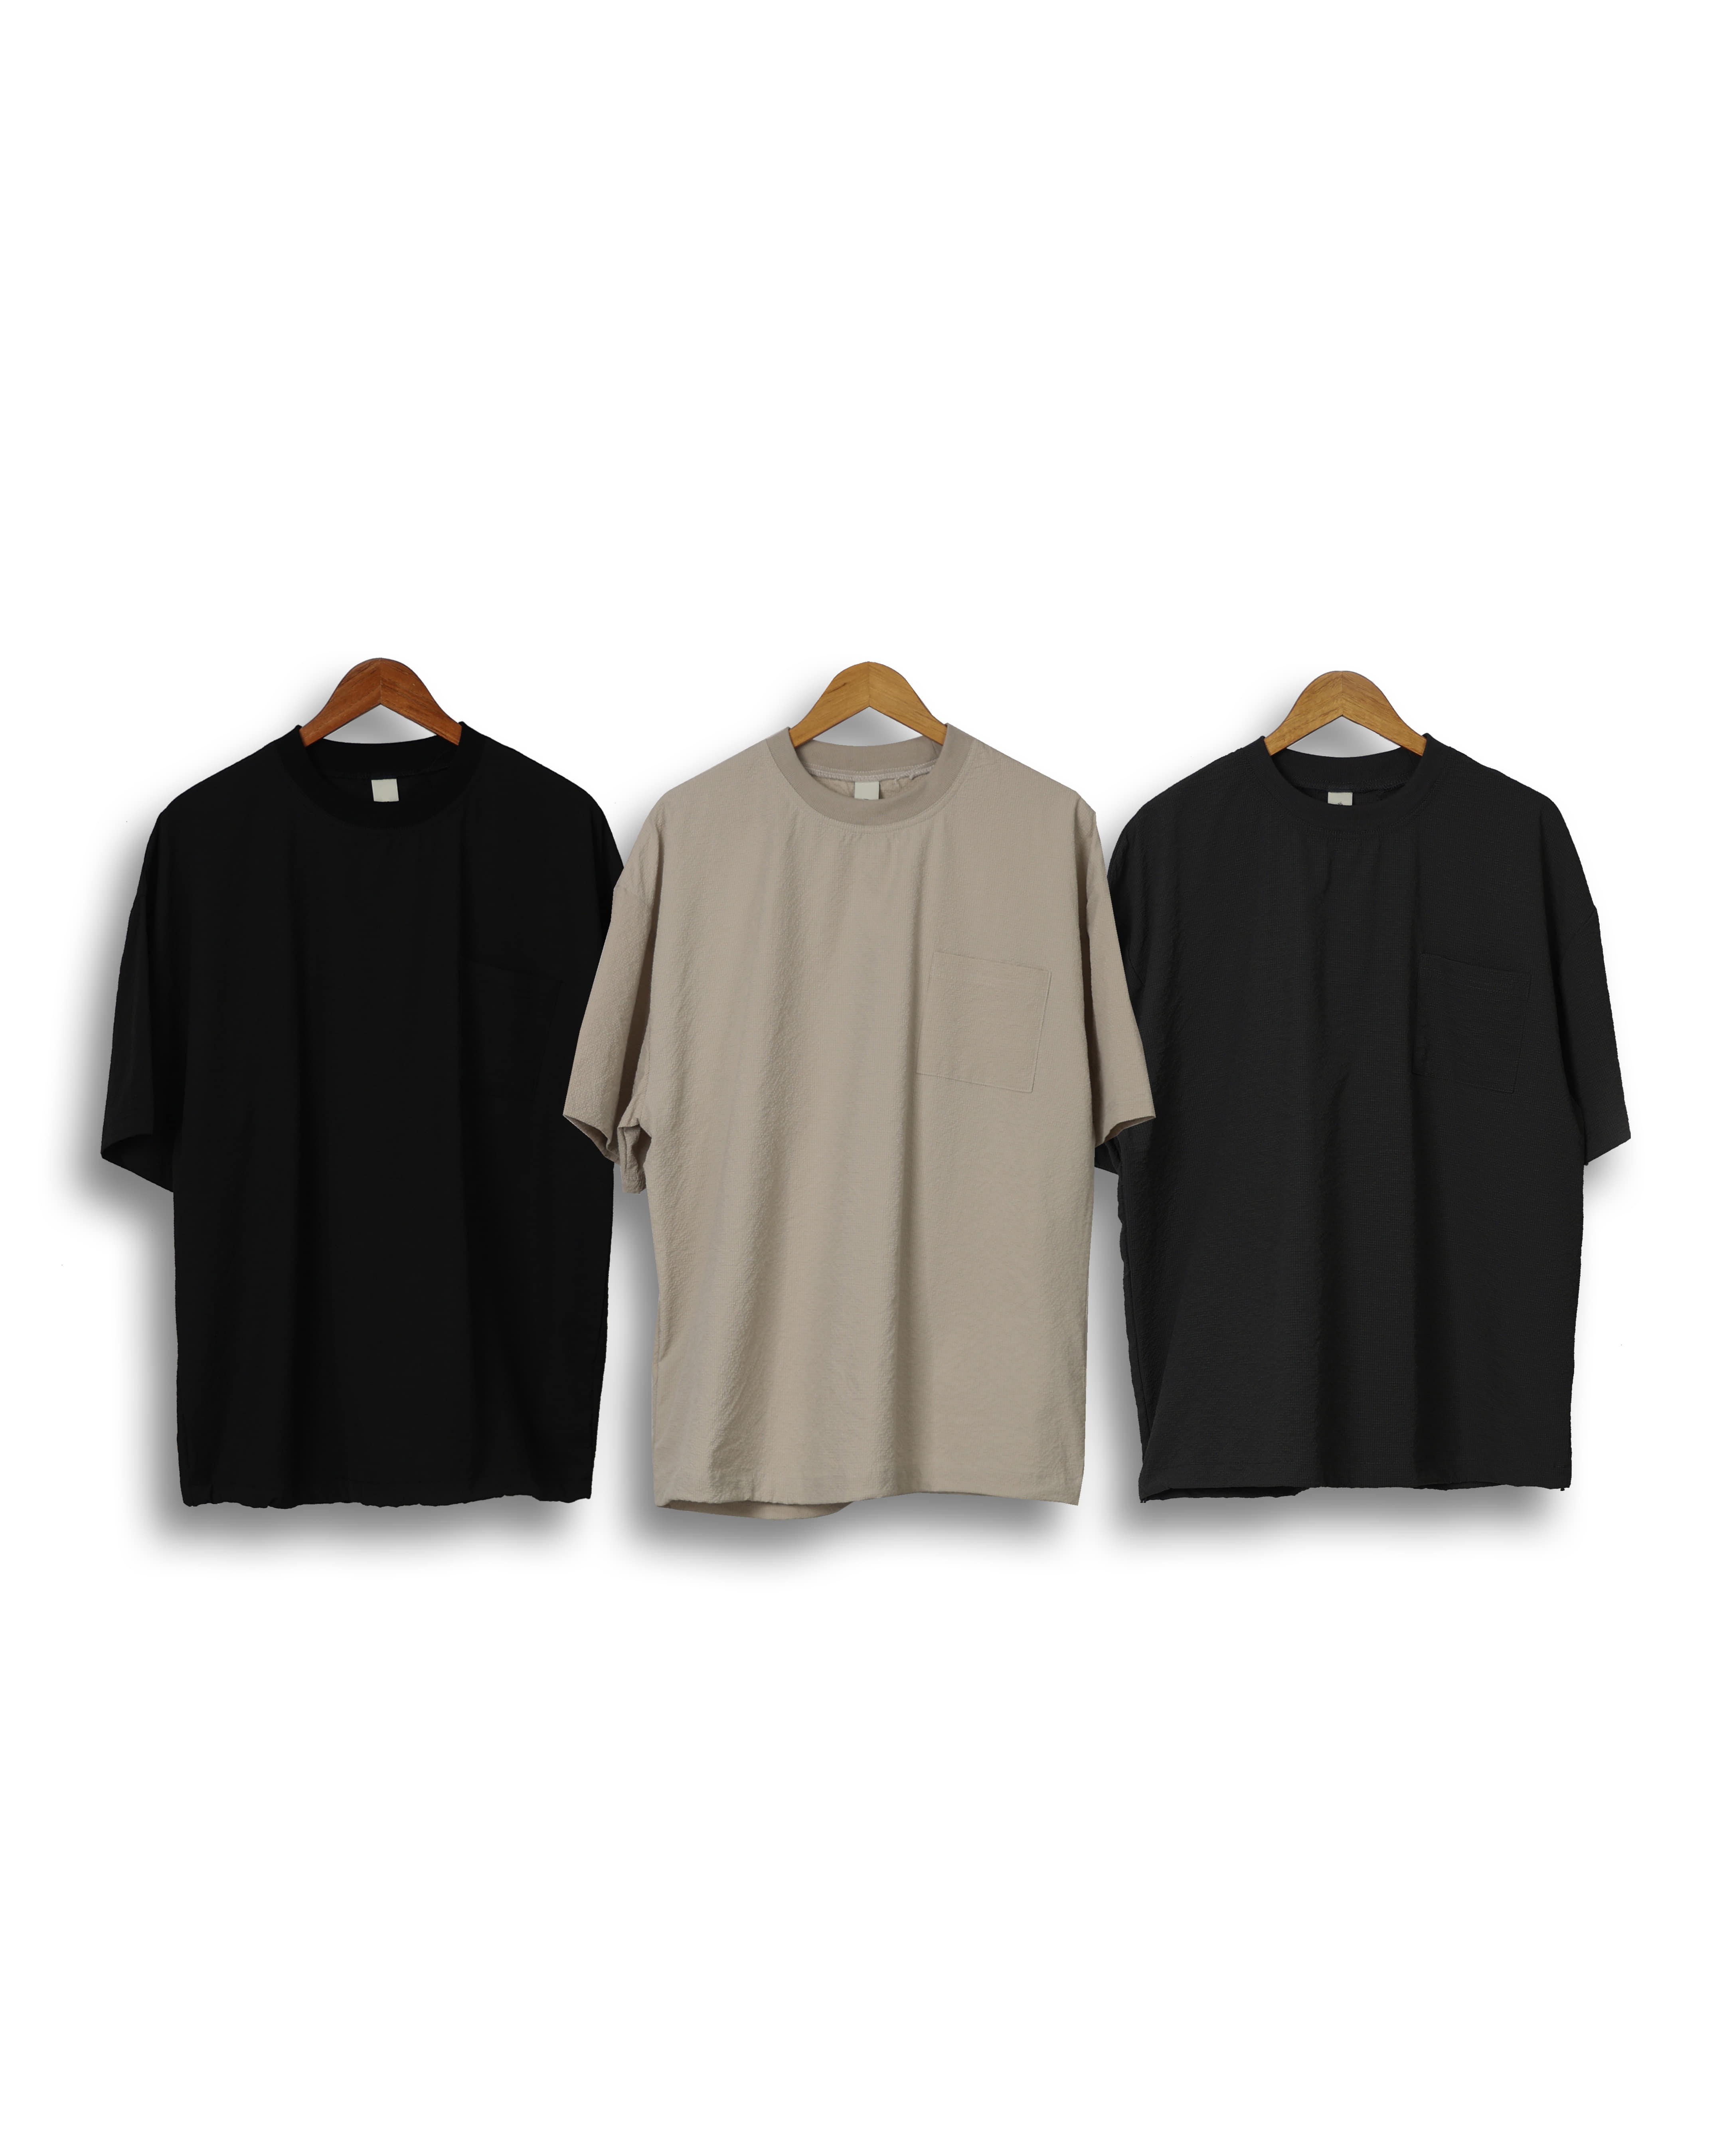 RAM Seersucker Pleats Over T Shirts (Black/Charcoal/Beige)